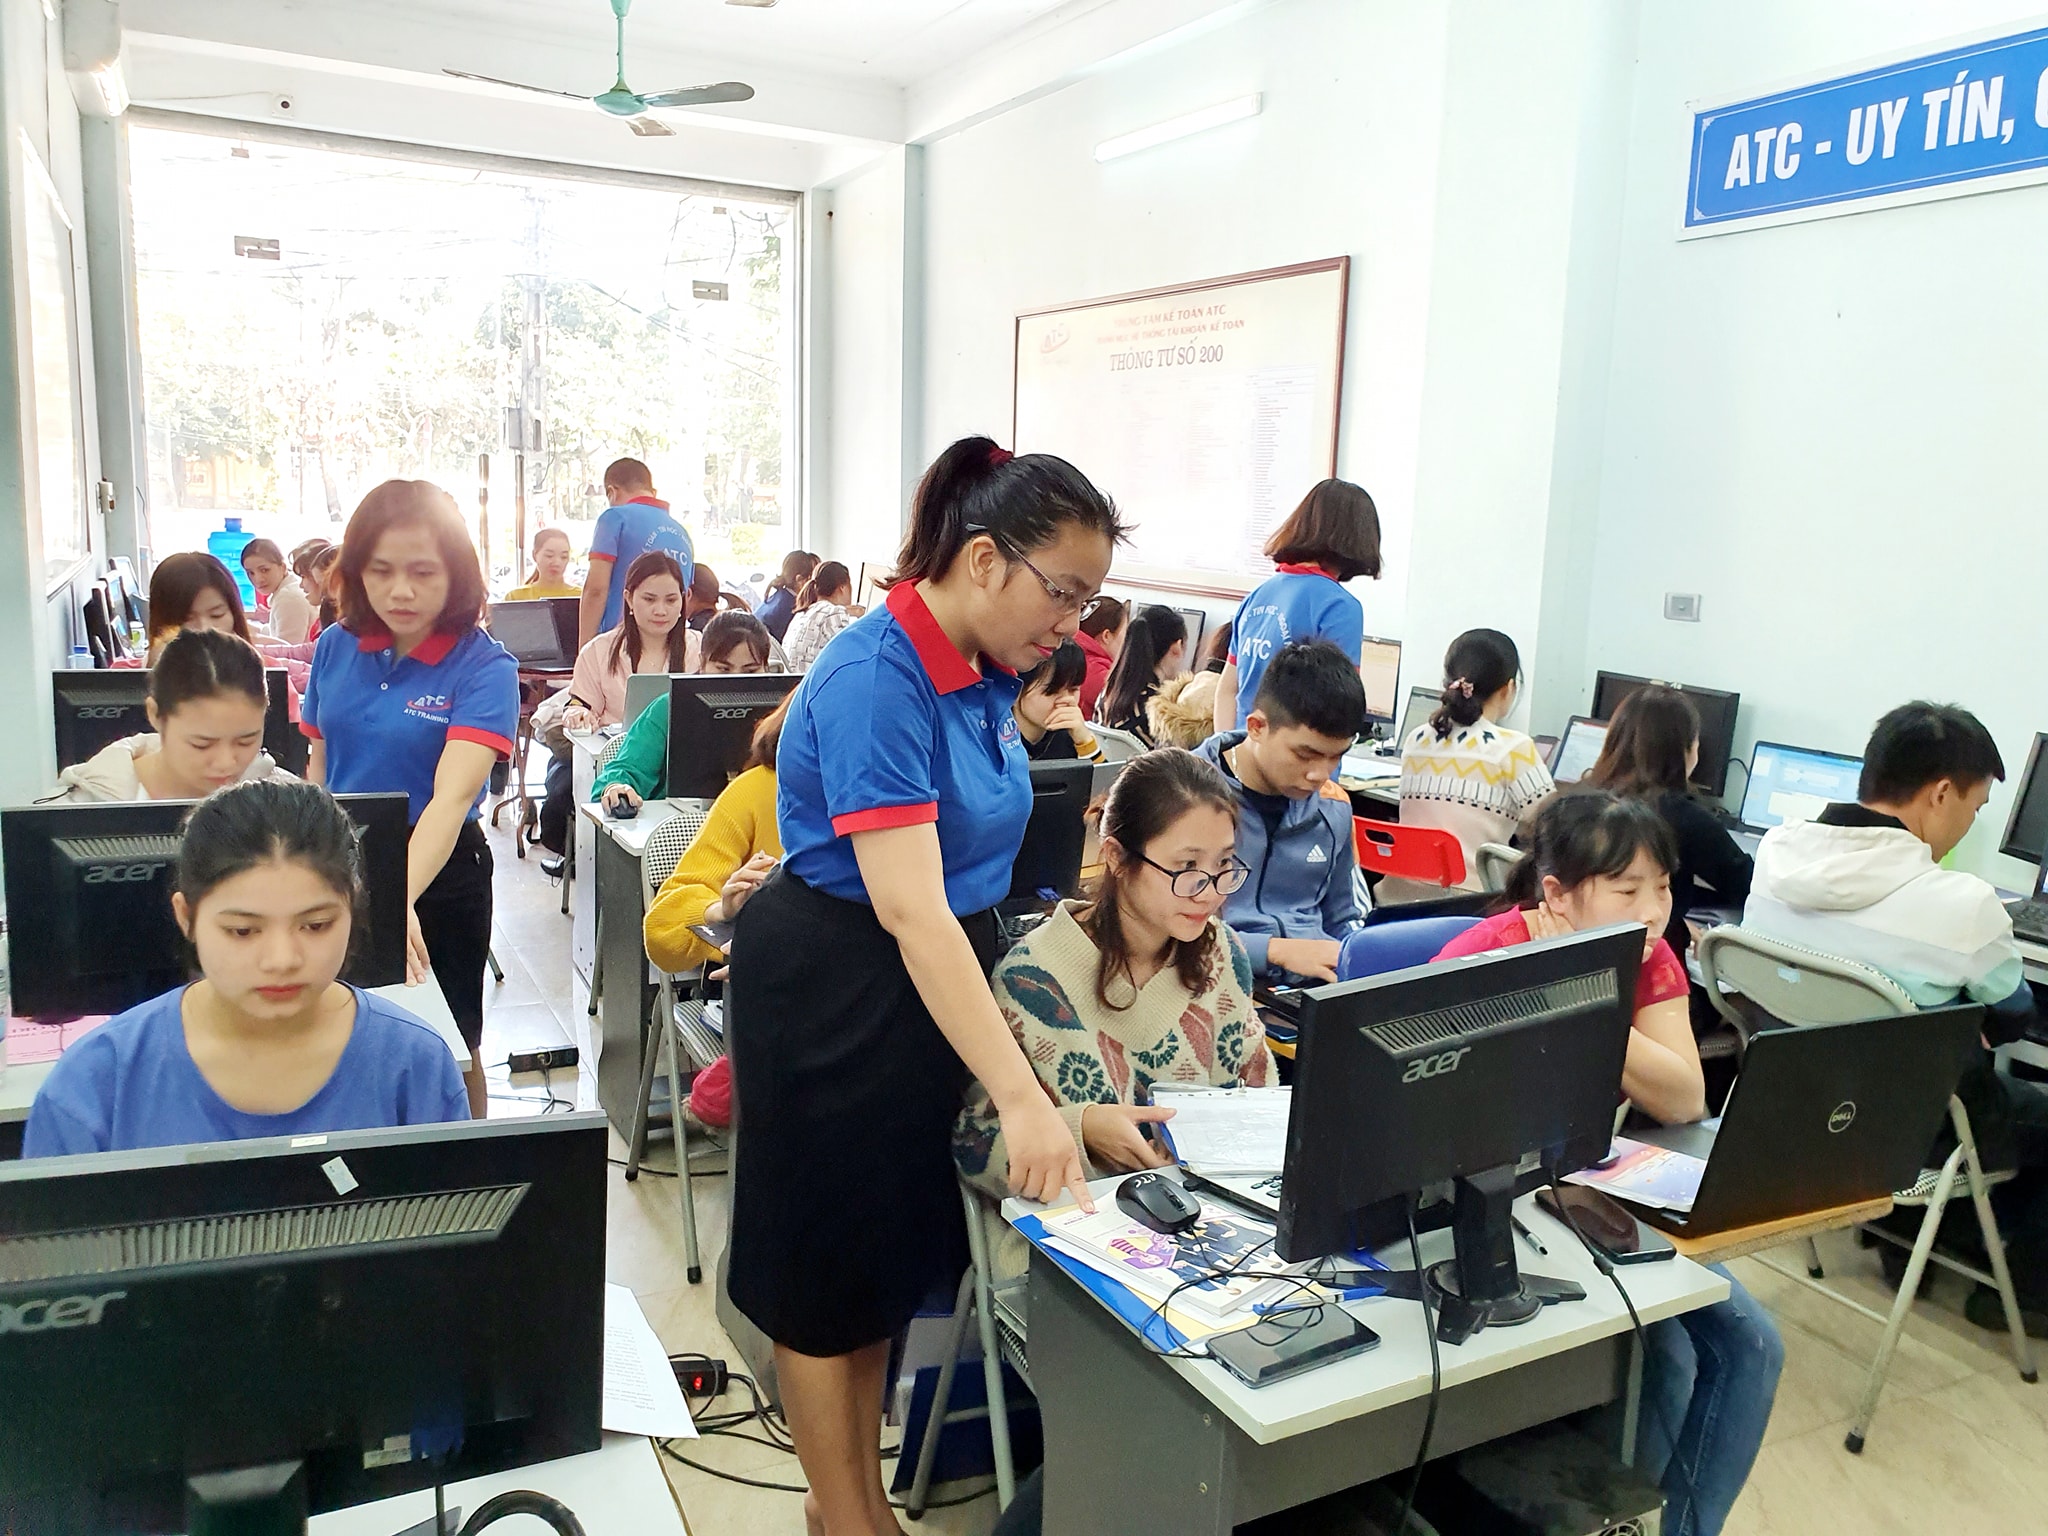 Học tin học văn phòng tại Thanh Hóa là trung tâm nhận được nhiều review đánh giá tốt nhất trên khắp các diễn đàn của các chuyên gia làm nghề văn phòng và học viên theo học